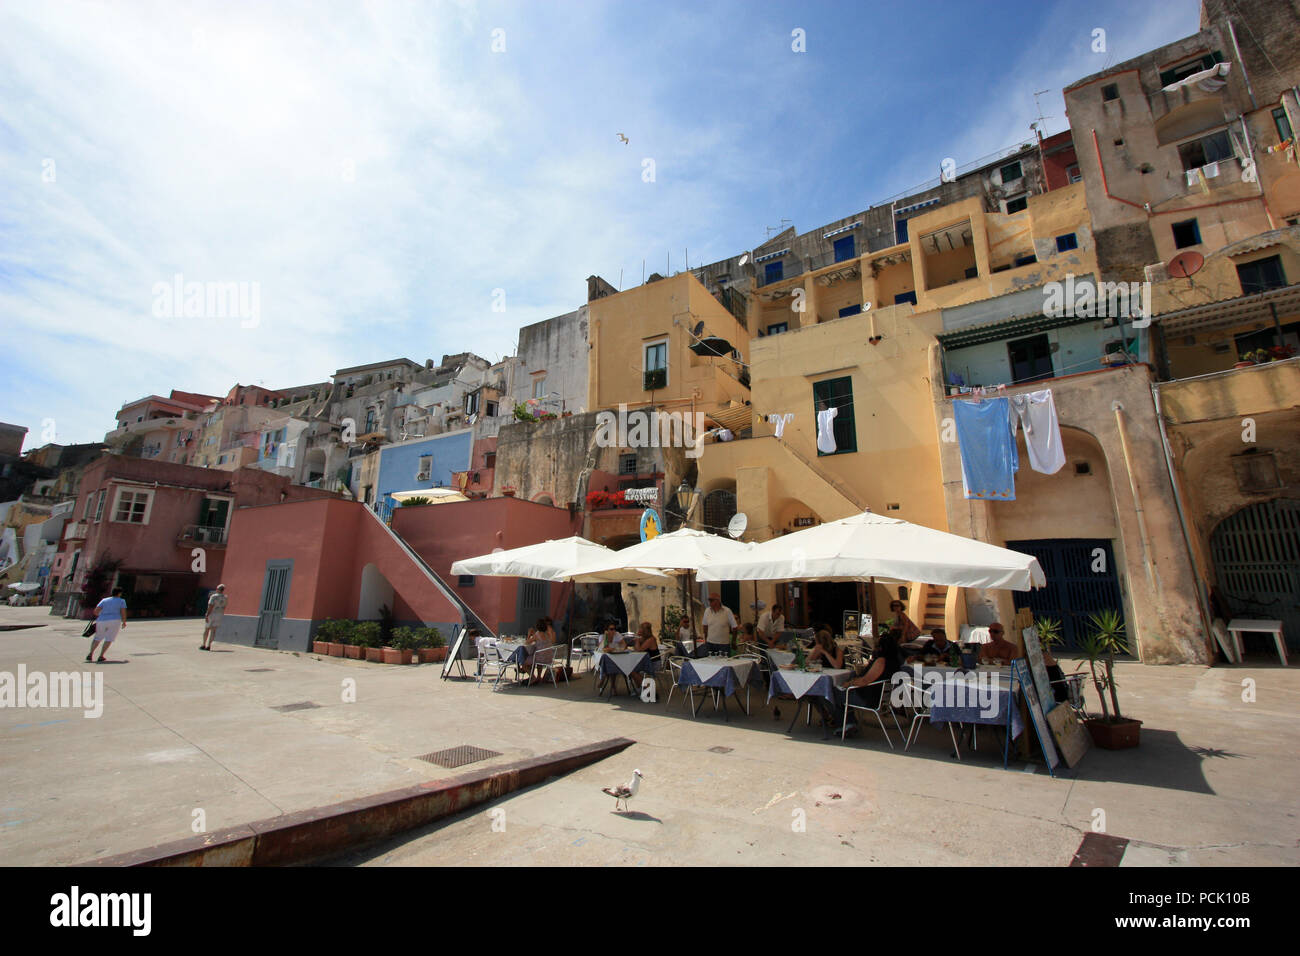 Menschen ihren Kaffee in einem Café oder in einem Restaurant an der Promenade von Corricella auf Procida, Golfo di Napoli, Italien Stockfoto